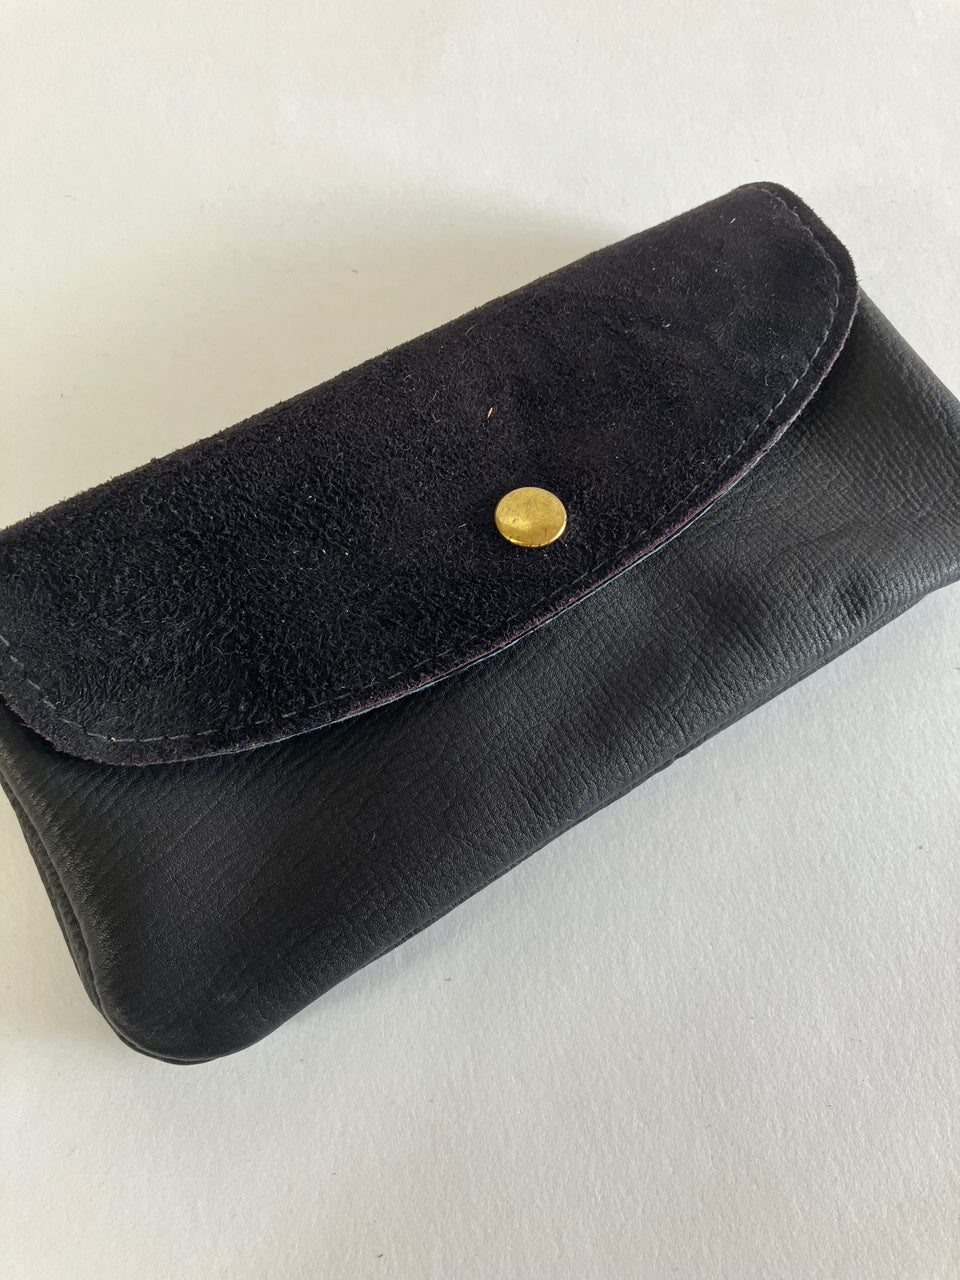 SAMPLE black nubuck Minimalist leather wallet